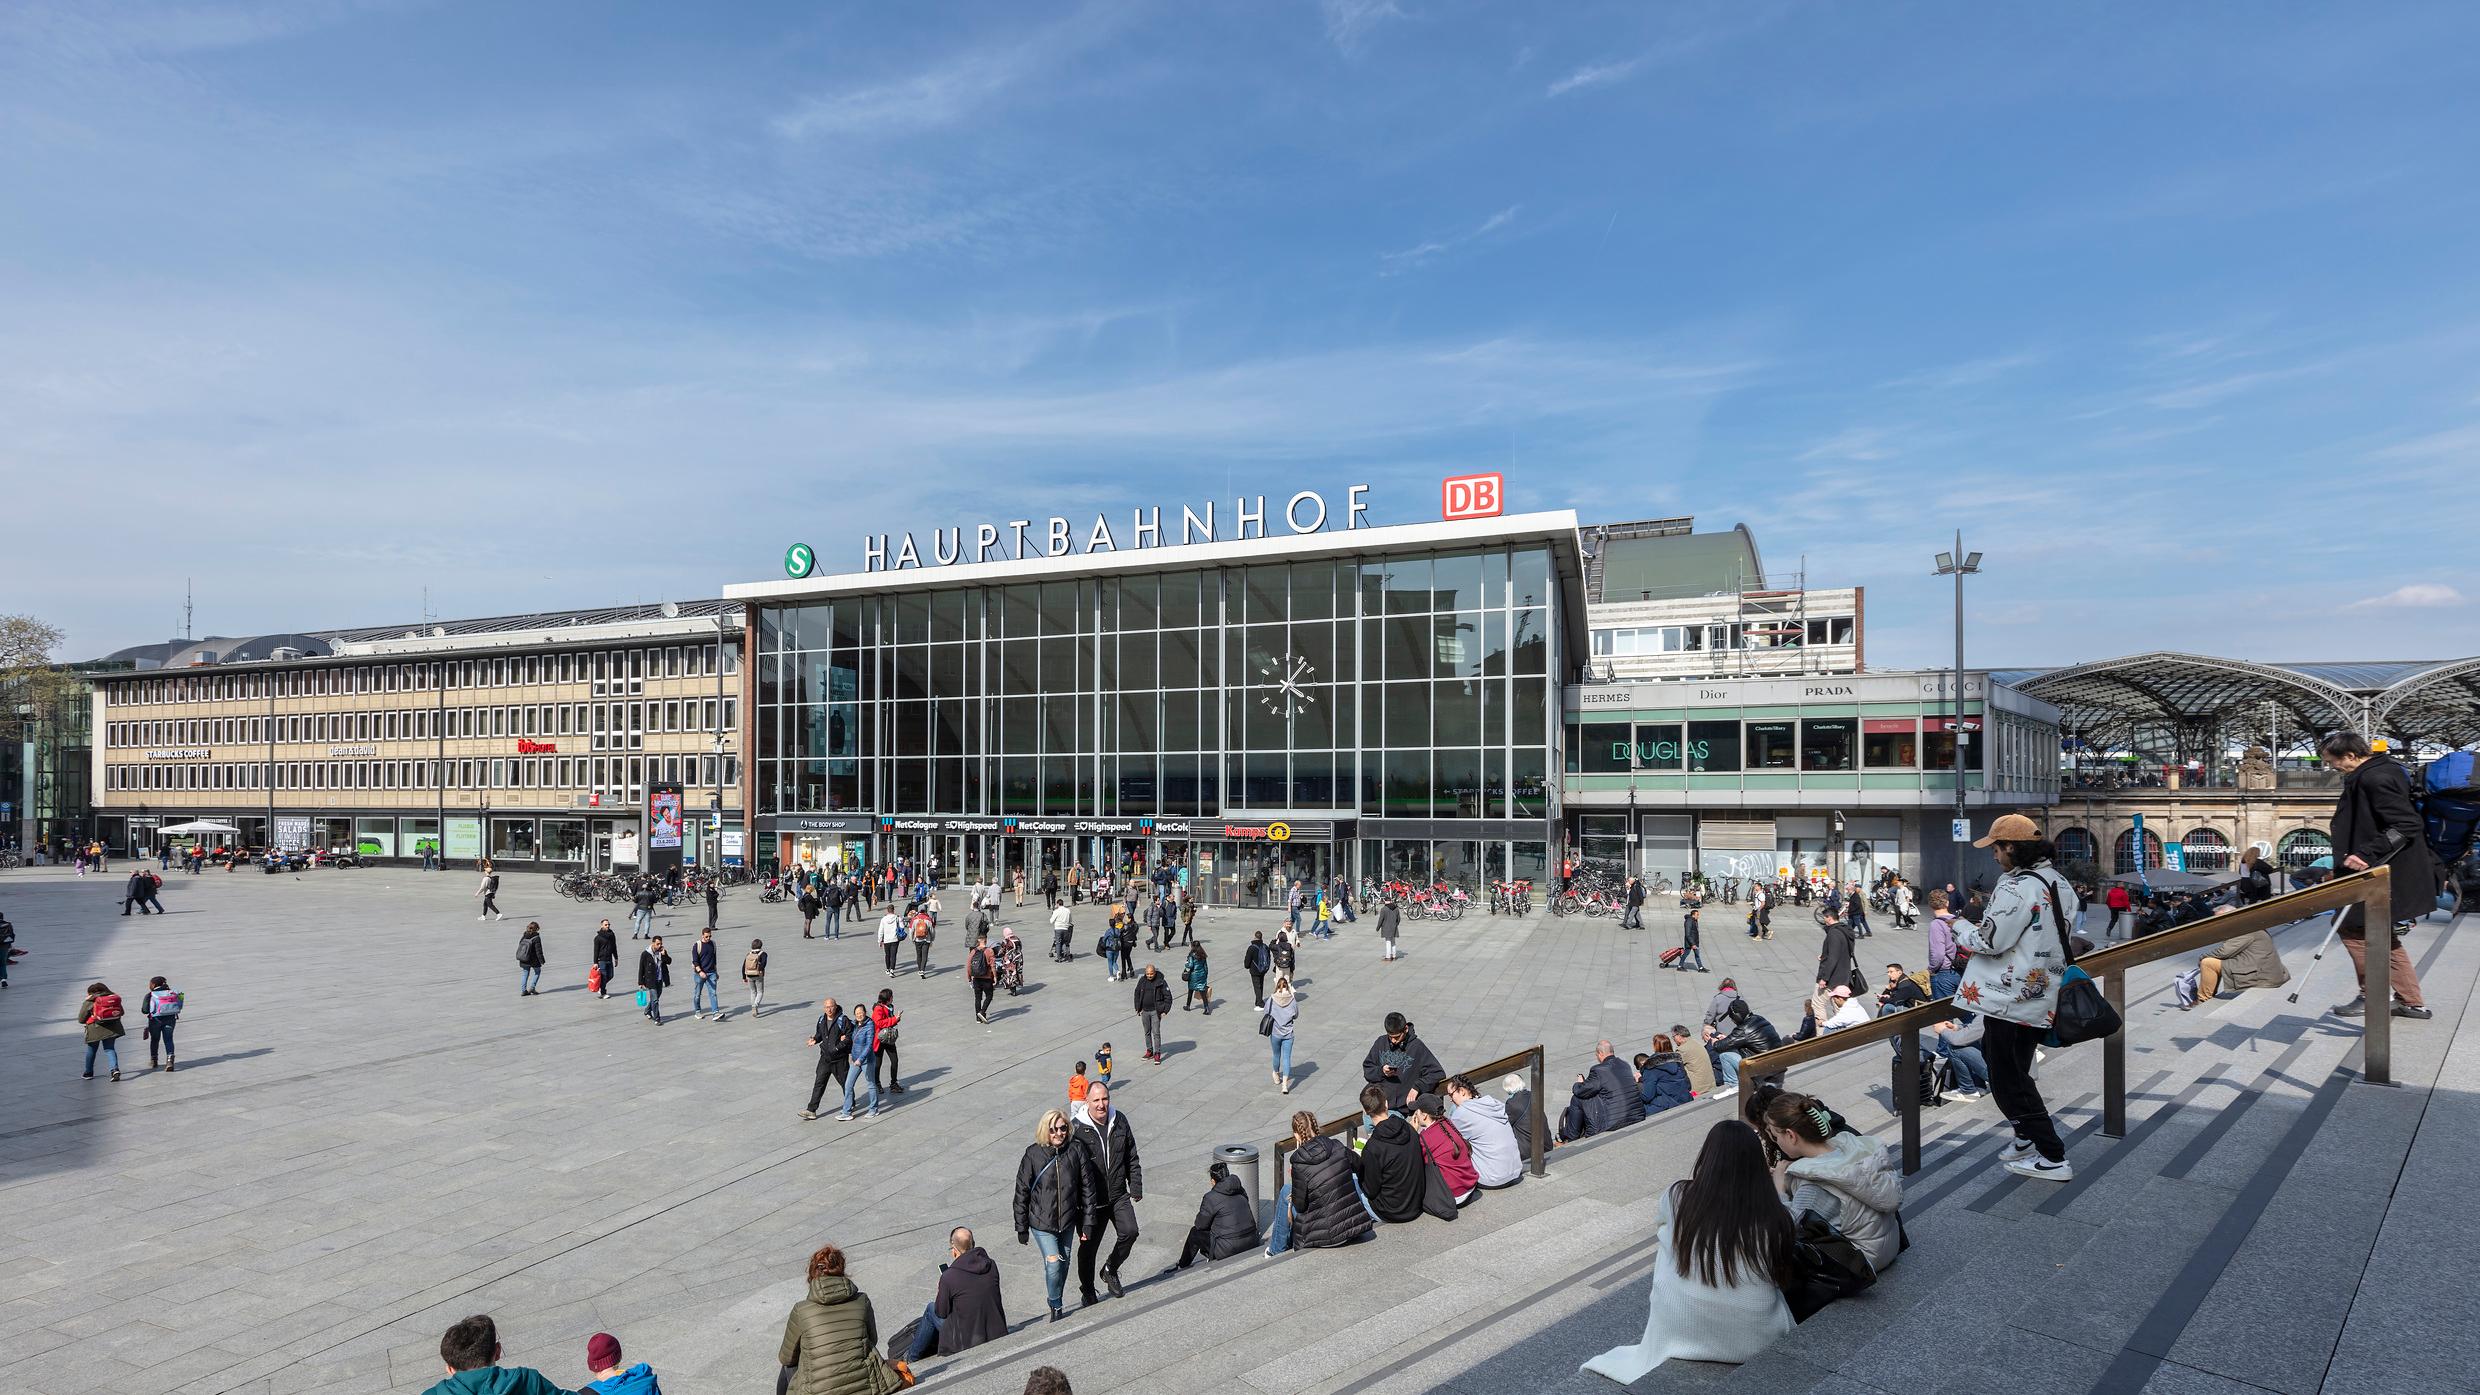 Der Blick auf das Empfangsgebäude und den Bahnhofsvorplatz des Hauptbahnhofs Köln.